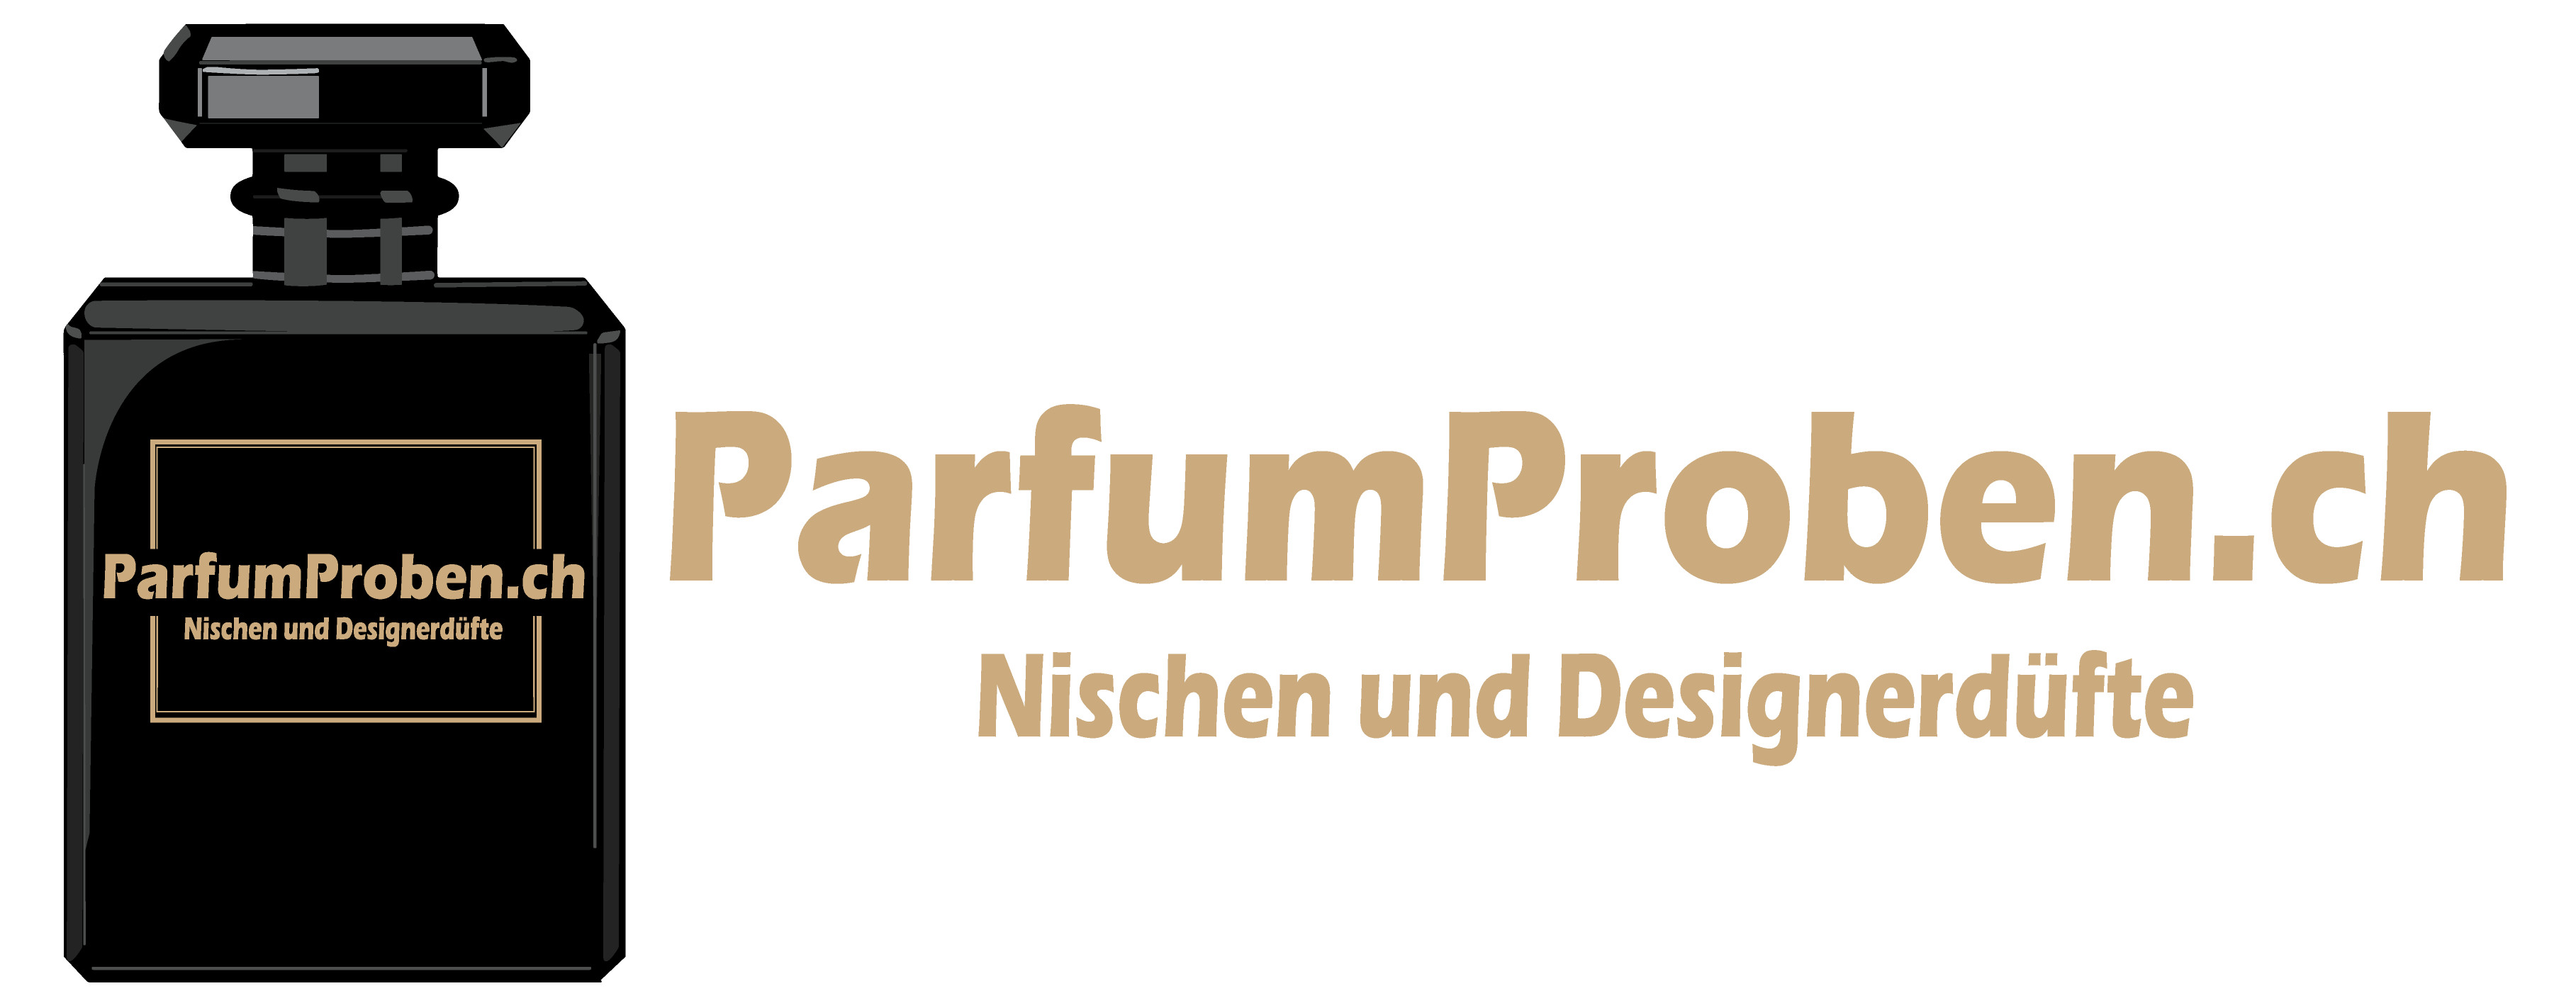 ParfumProben.ch-Logo